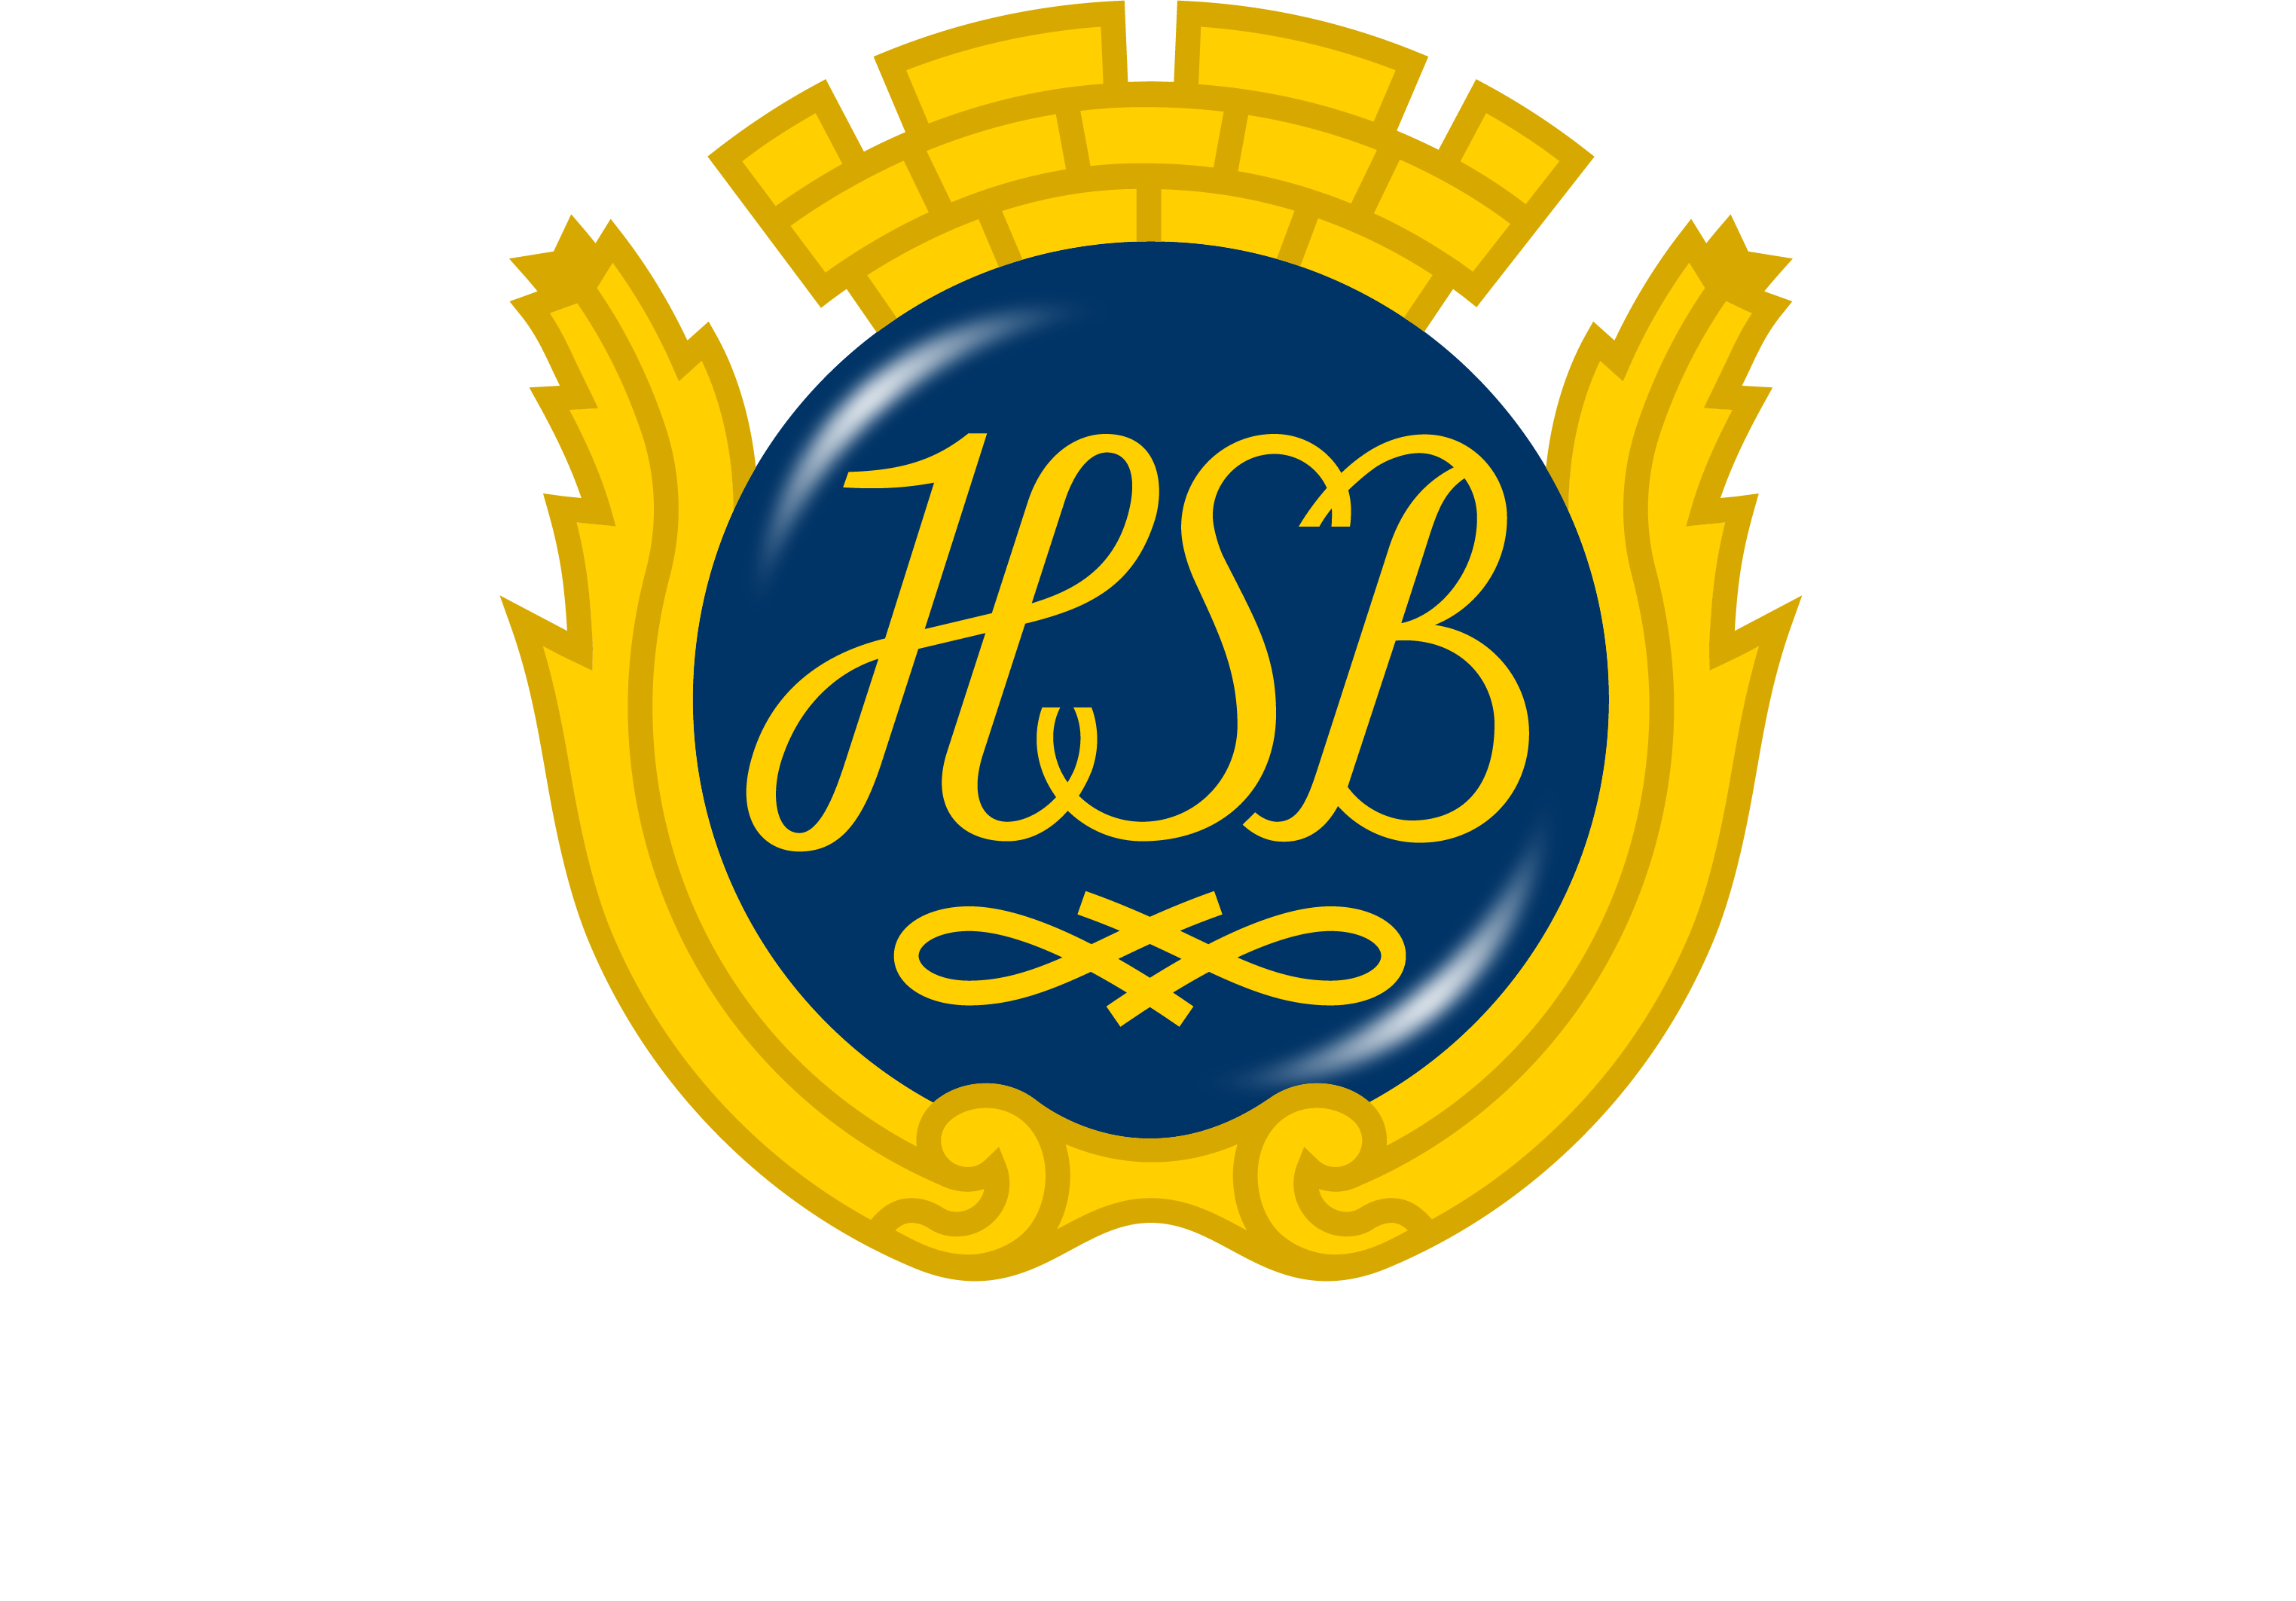 HSB-RGB-Neg-2019.png